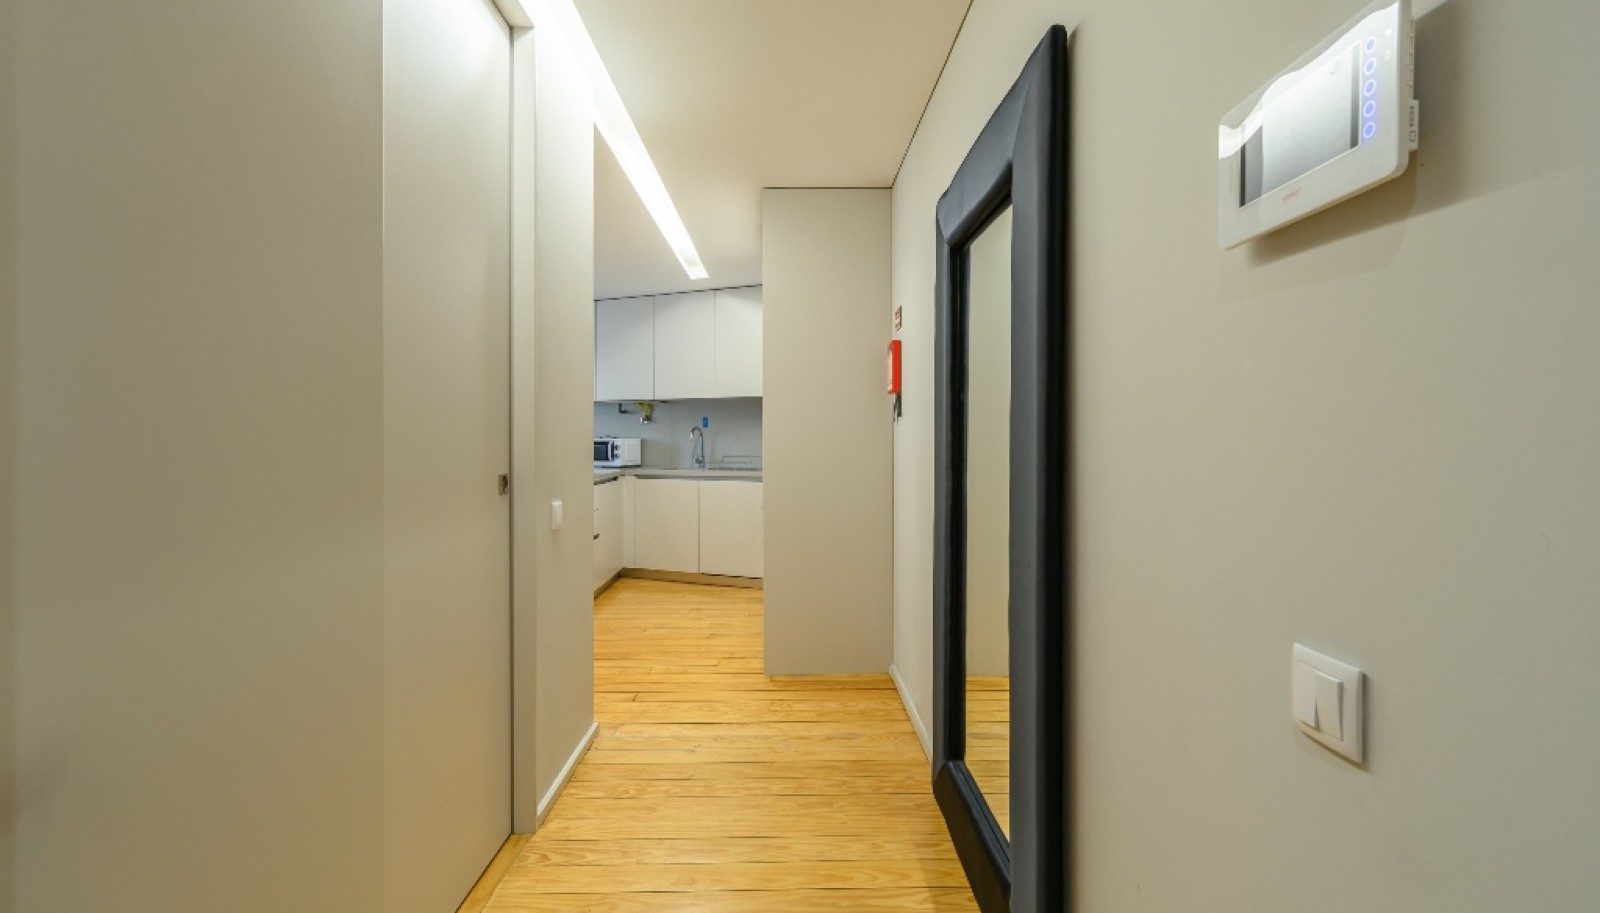 Apartamento T1 com garagem, para venda, no centro do Porto_261820